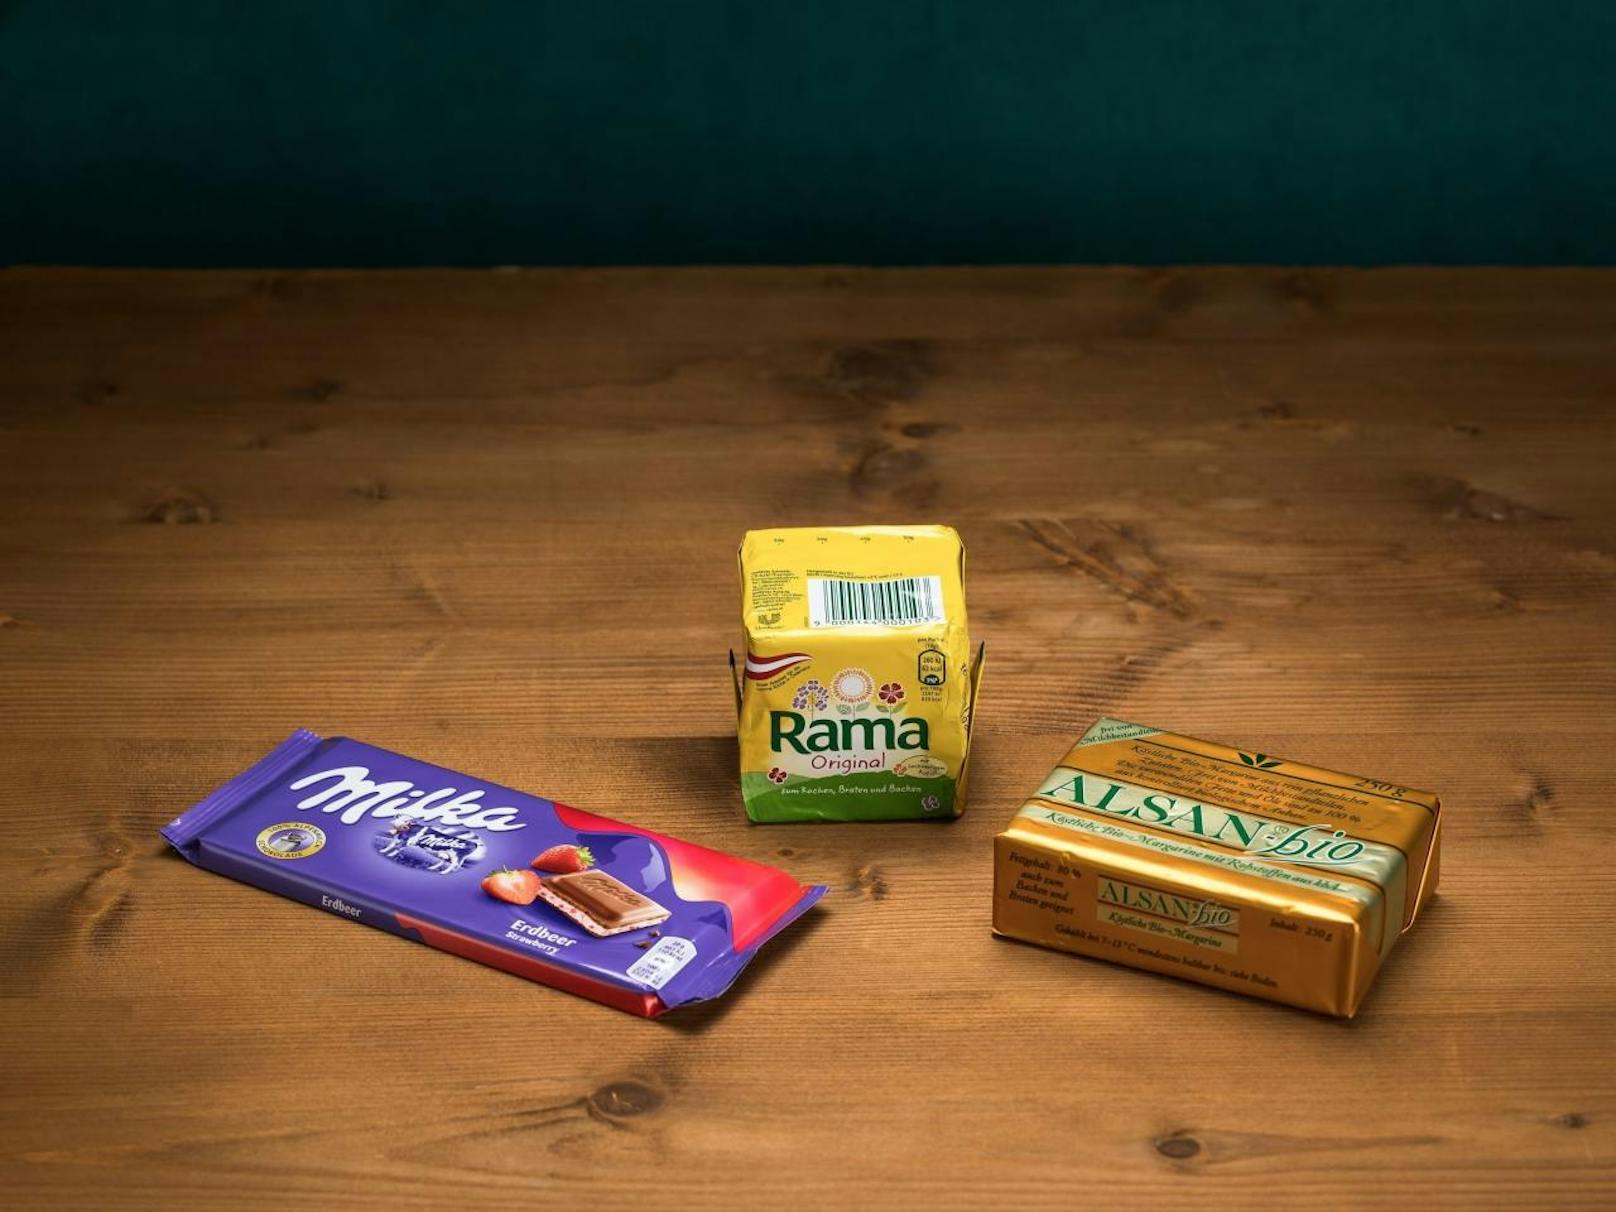 Milka-Erdbeer-Schokolade und Margarinen stark mit krebserregenden Schadstoffen belastet.

Greenpeace / Mitja Kobal